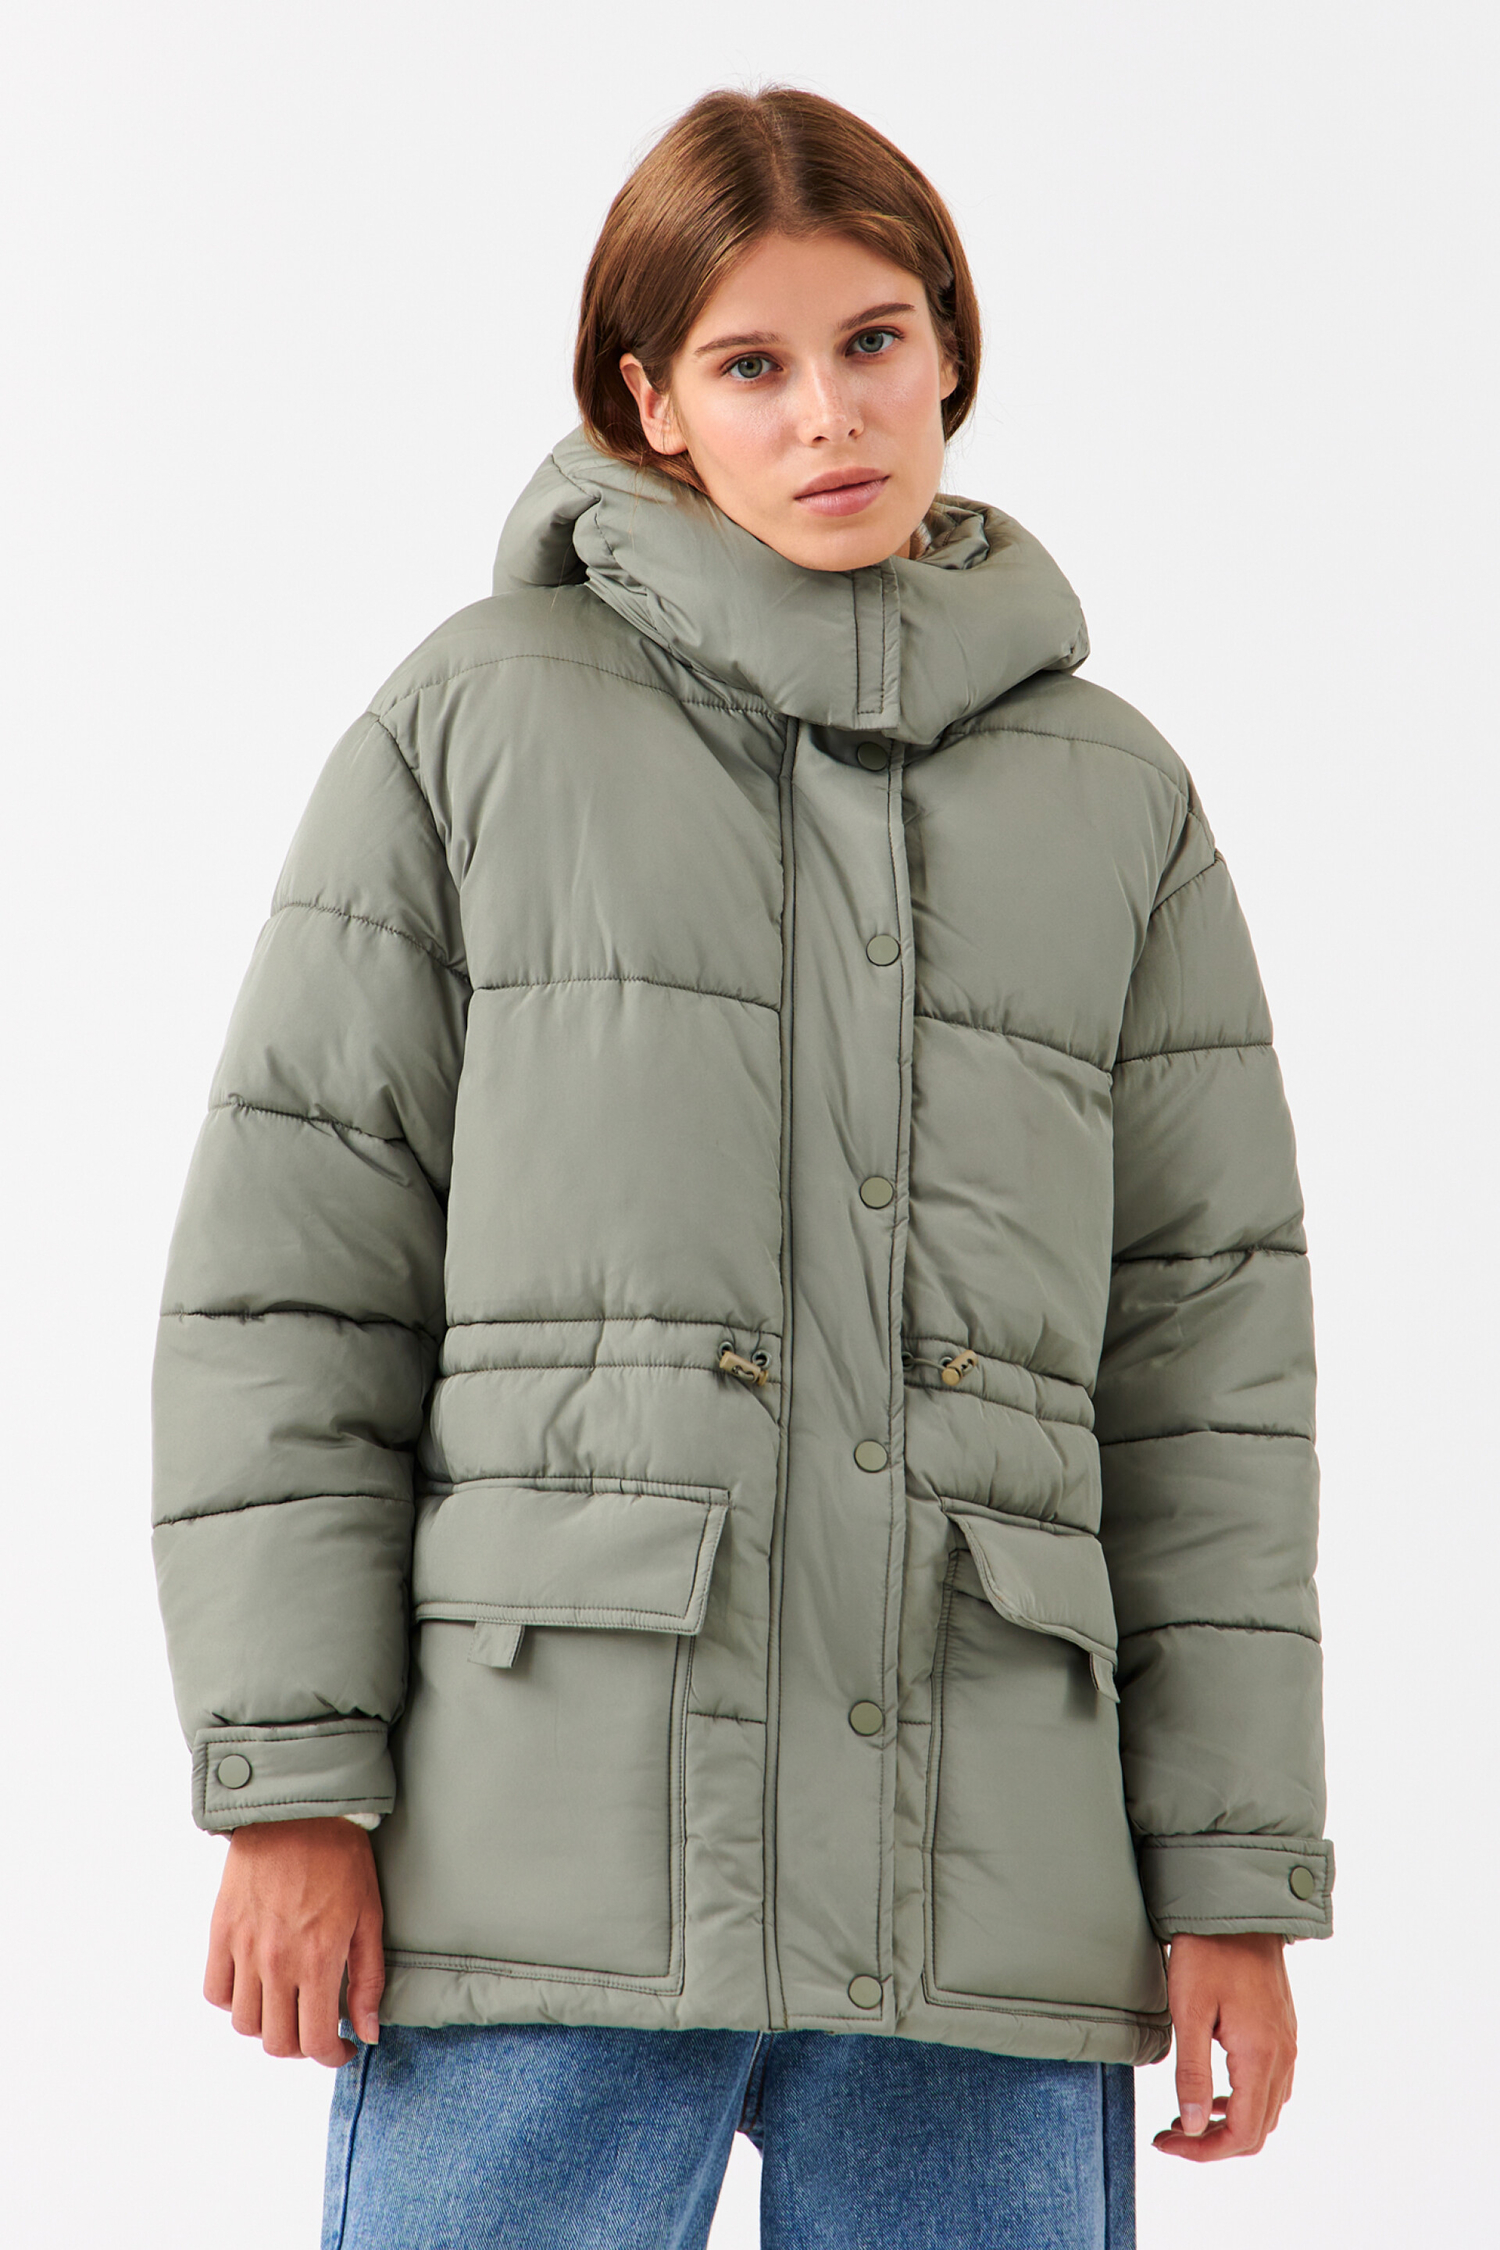 Куртка женская befree (2131654104) купить за 3999 руб в Старом Осколе -SKU11184027